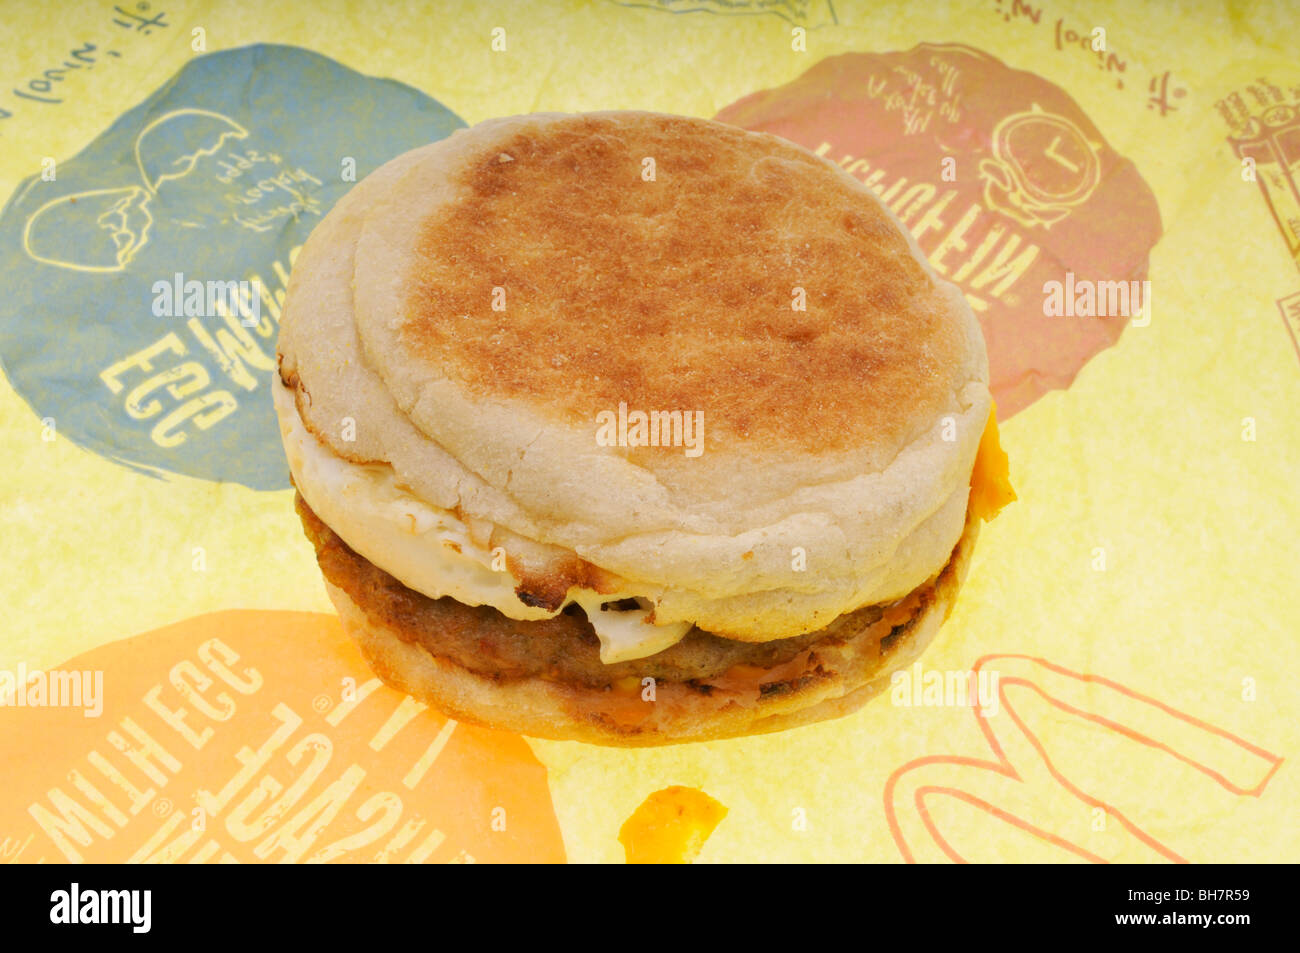 Mcdonalds uova salsiccia e formaggio mcmuffin prima colazione inglese sandwich muffin sull'involucro usa Foto Stock